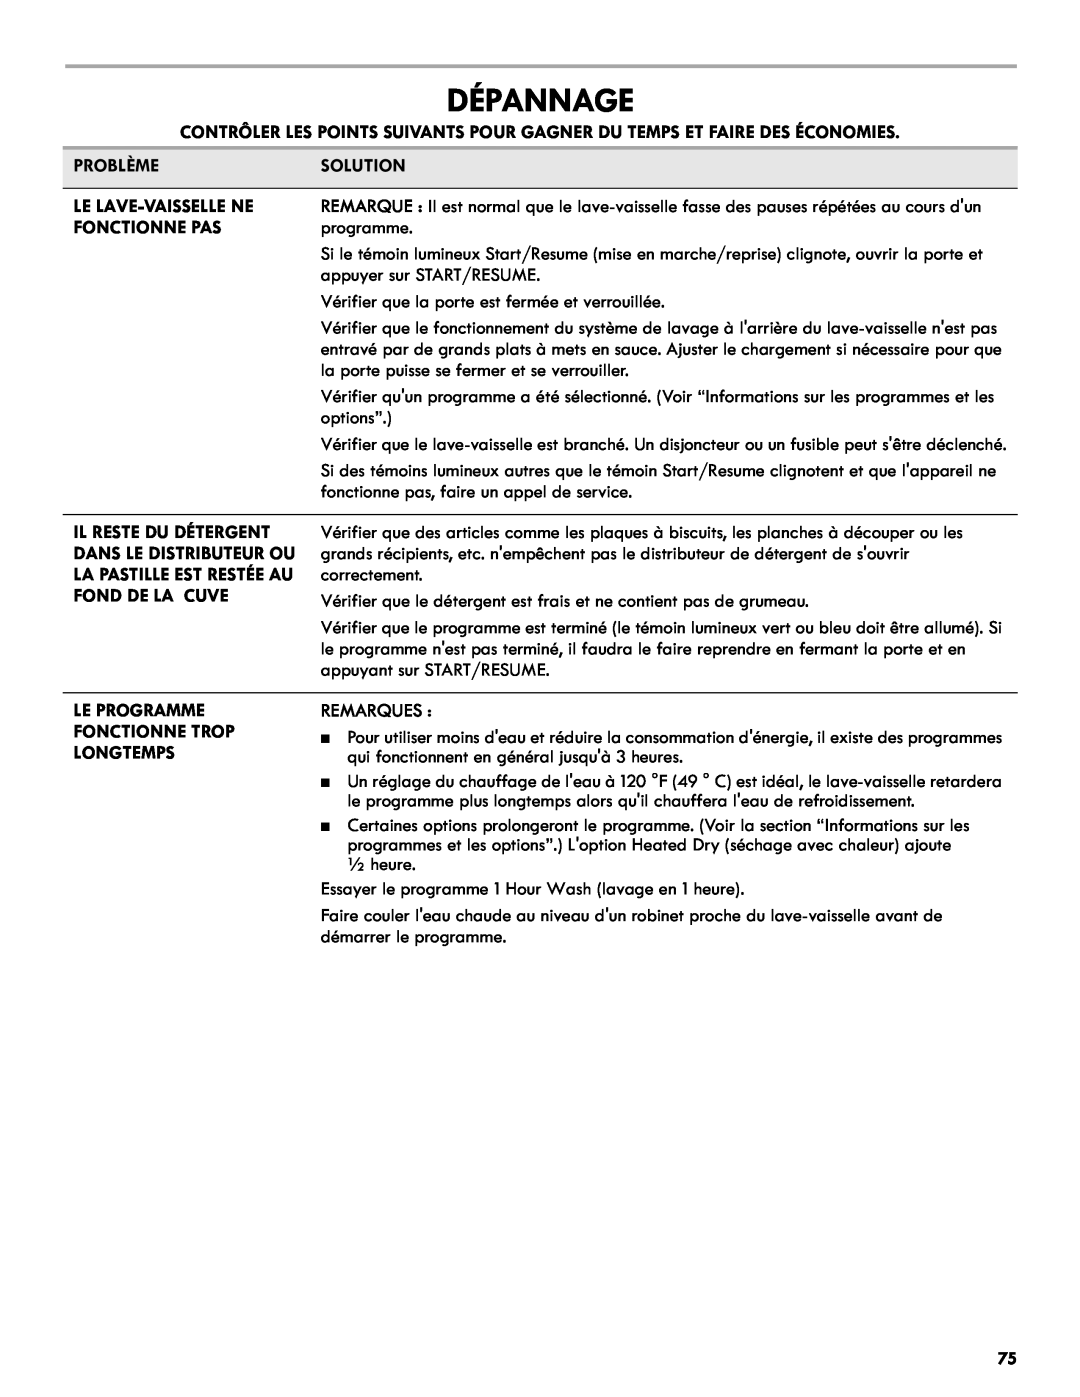 Kenmore 665.1327 manual Dépannage, Problèmesolution, Le Lave-Vaissellene, Fonctionne Pas, Fond De La Cuve, Remarques 